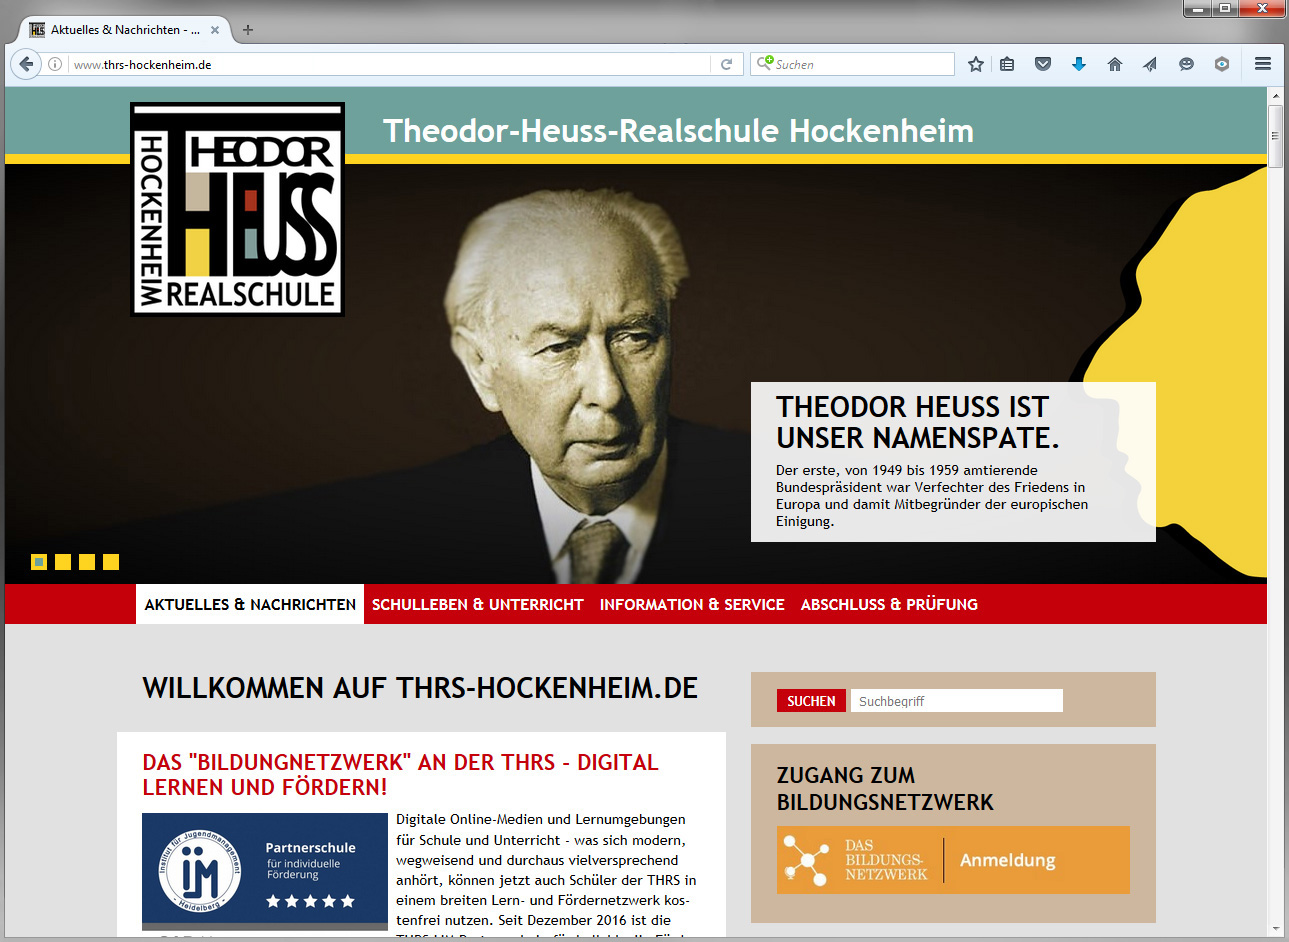 Die neue Website der Theodor-Heuss-Realschule Hockenheim